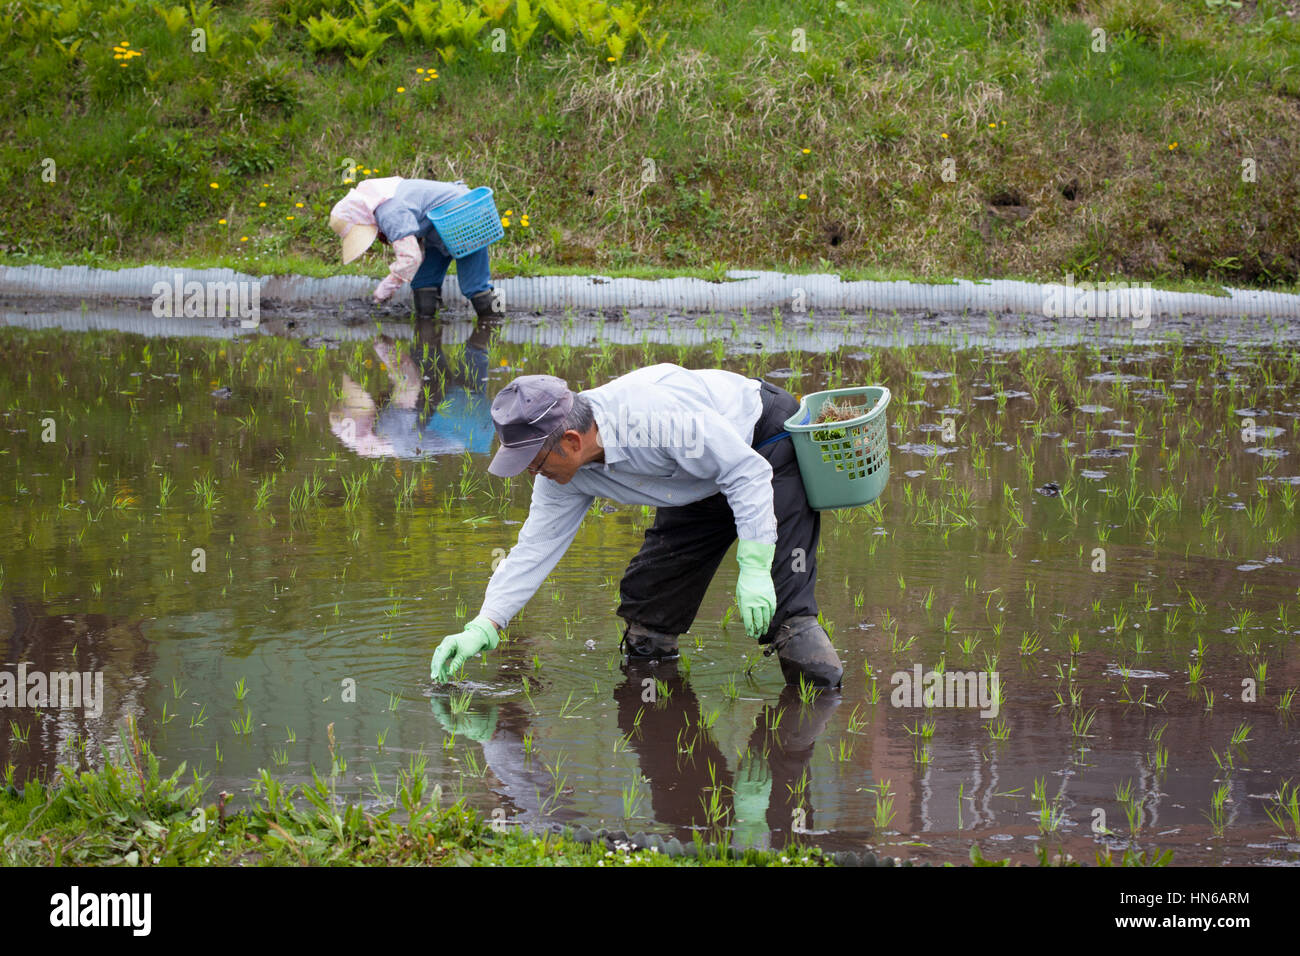 HAKUBA, Japón - 17 de mayo : gente sembrando semillas de arroz en un arrozal inundado cerca del lago Aoki, Hakuba el 17 de mayo de 2012. Es inusual ver arroz pl Foto de stock